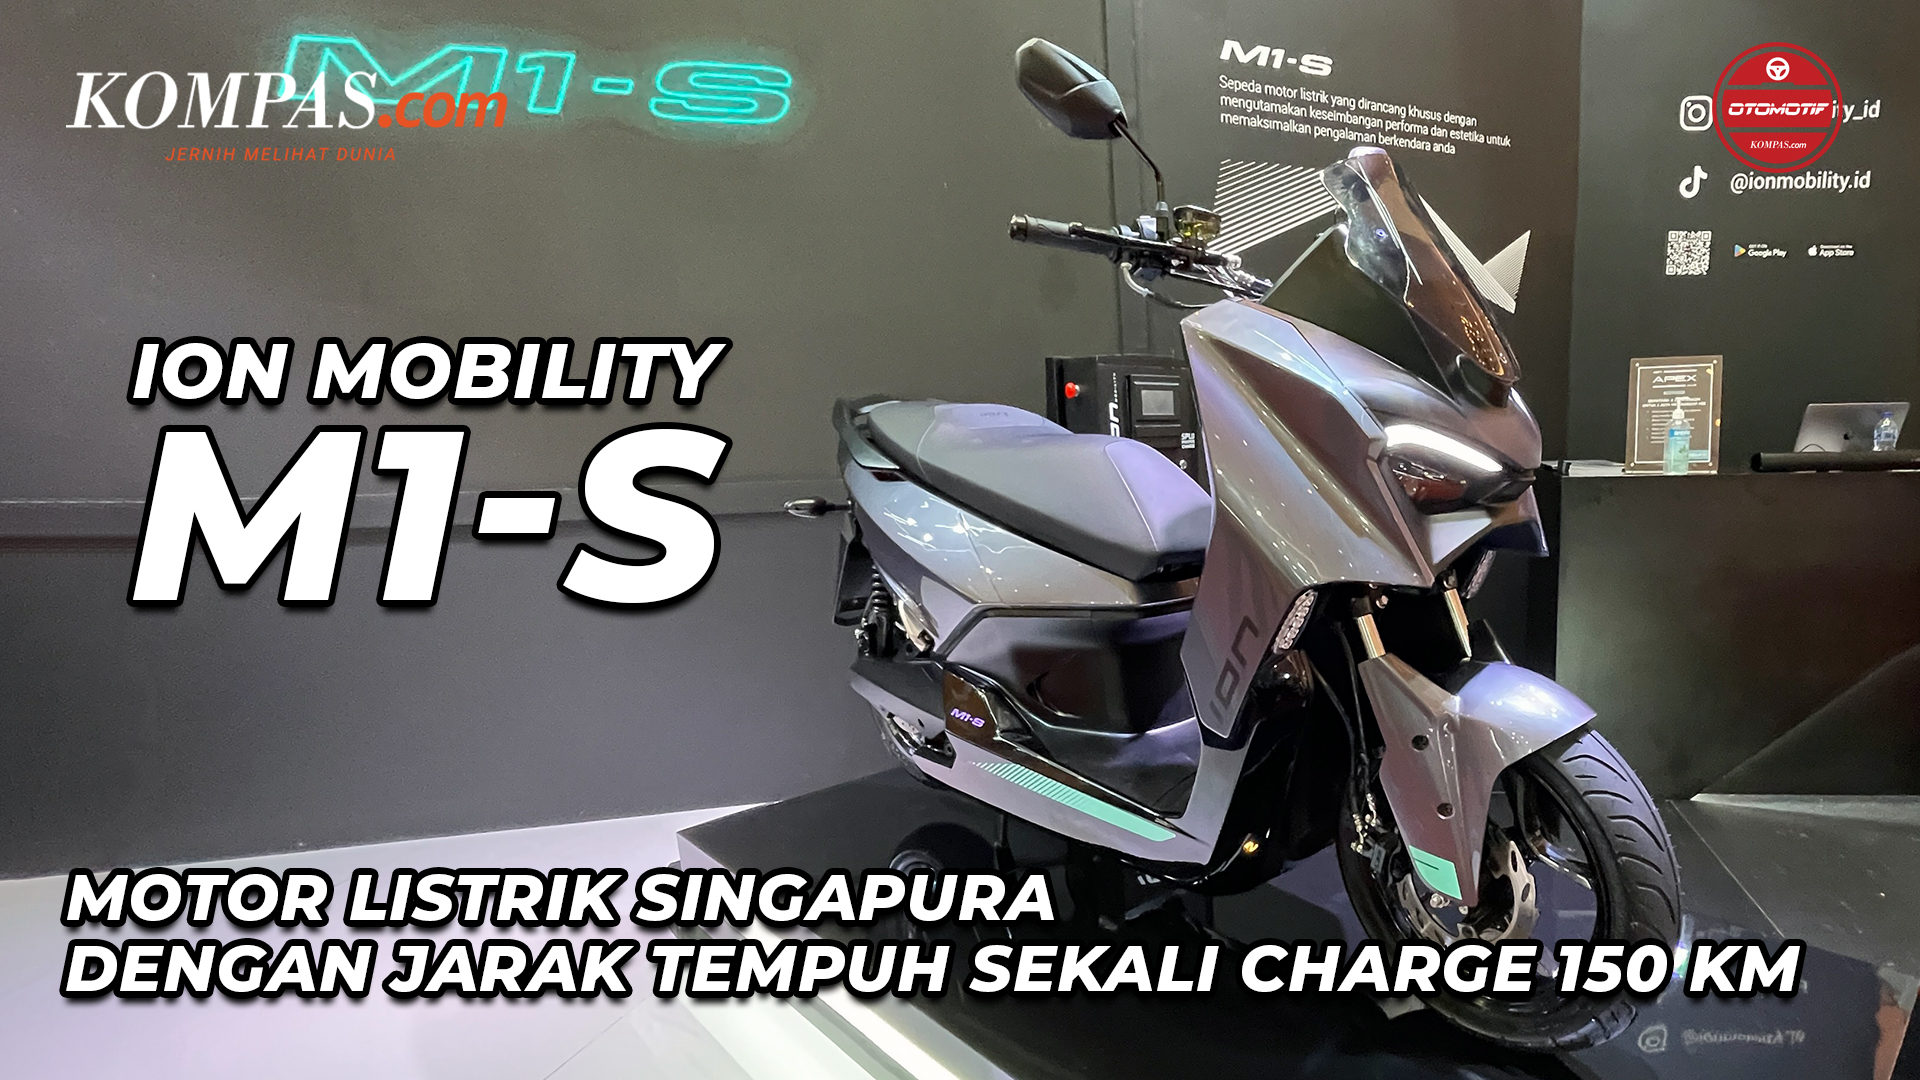 Ion Mobility M1-S | Motor Listrik Singapura Dengan Jarak Tempuh Sekali Charge 150 KM